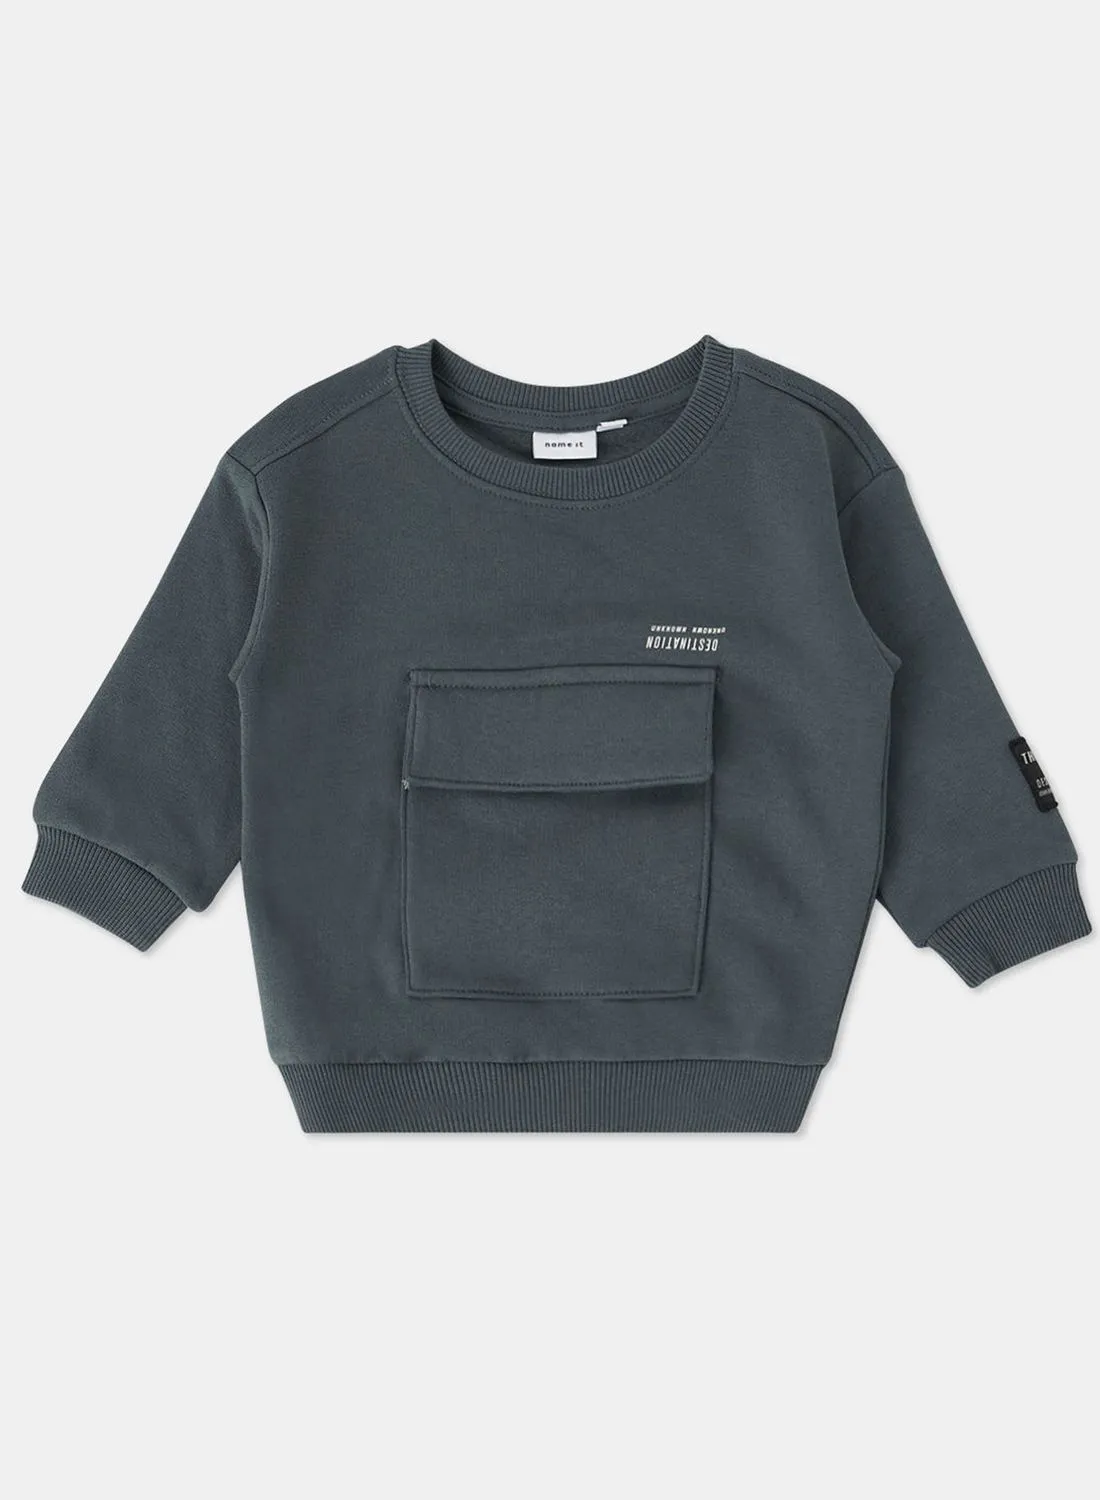 NAME IT Kids Long Sleeve Sweatshirt